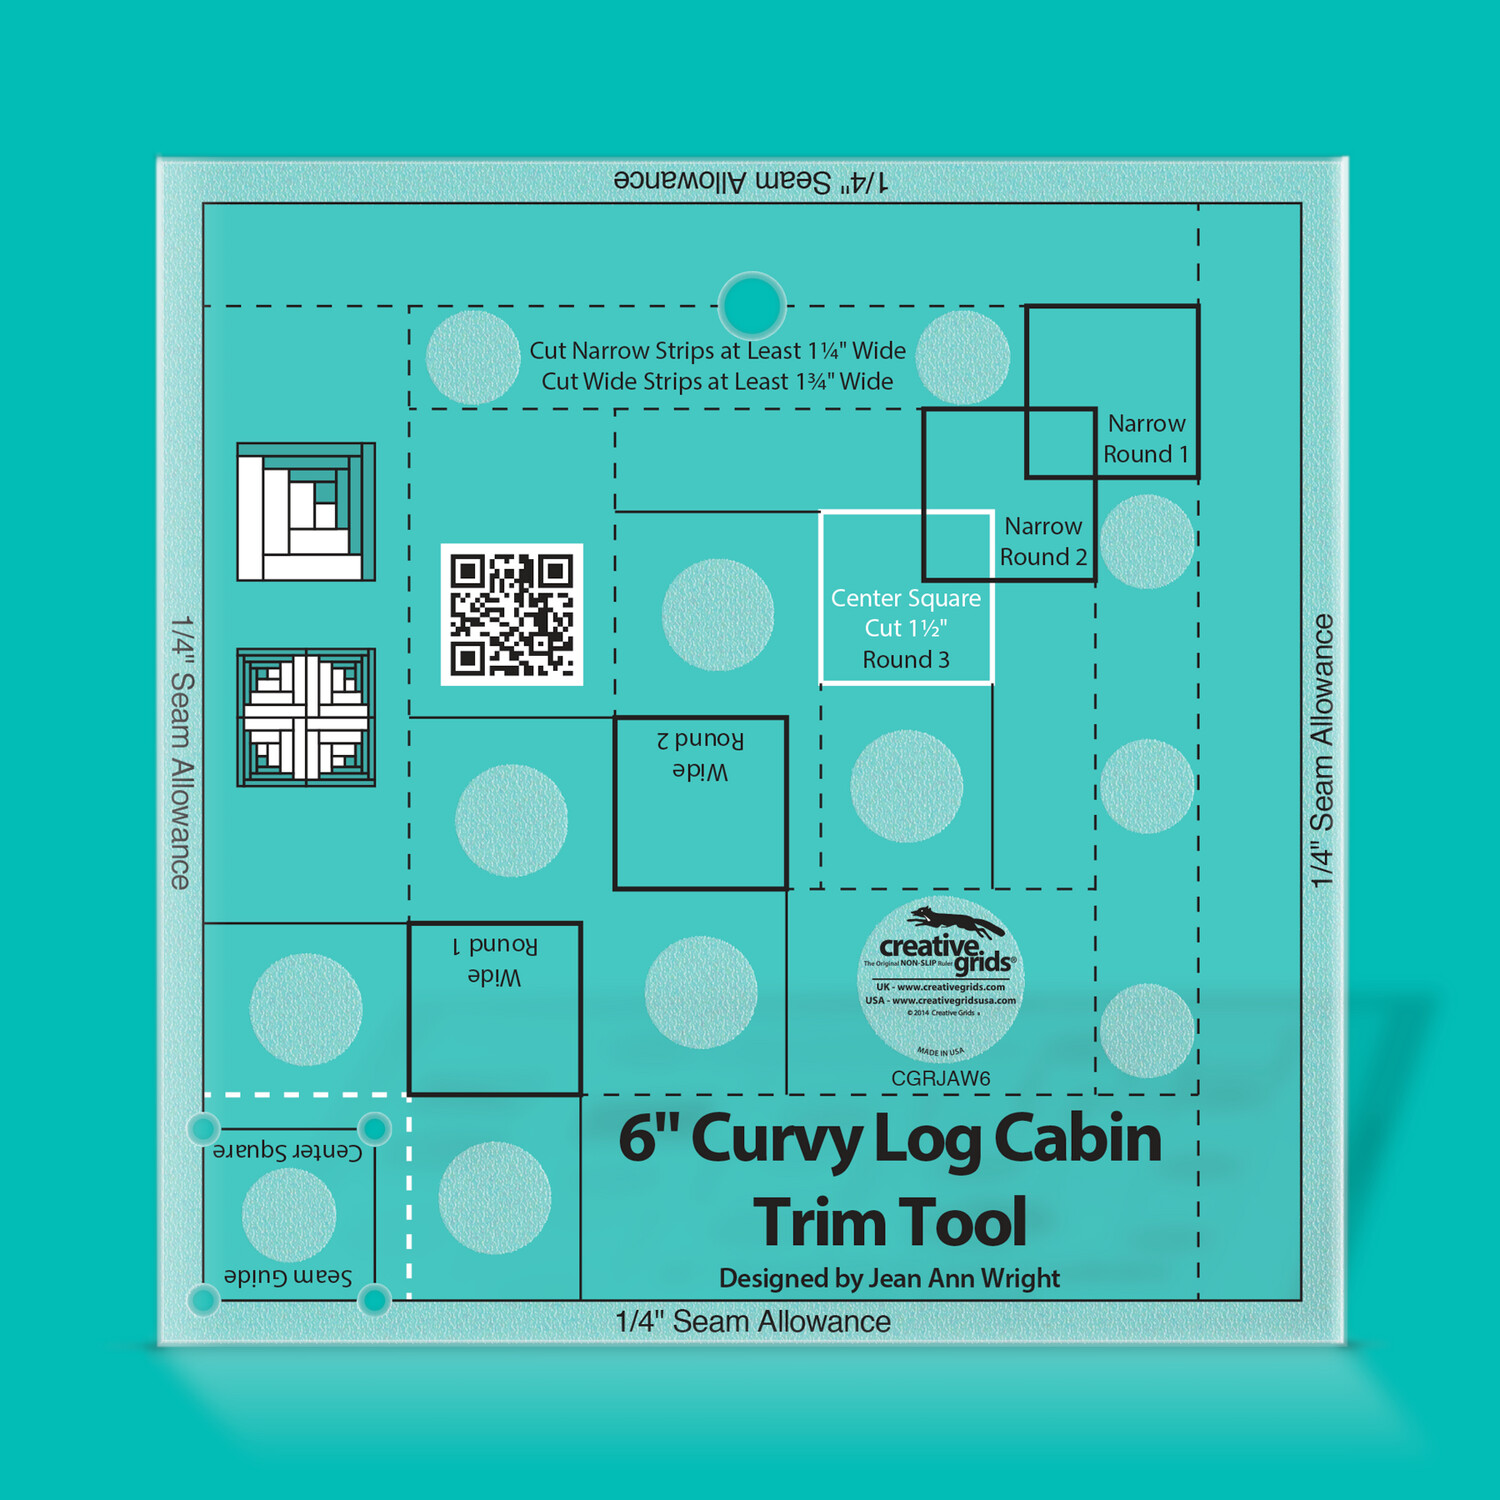 Creative Grids 6" Curvy Log Cabin Trim Tool Duo von Jean Ann Wright
| Non slip